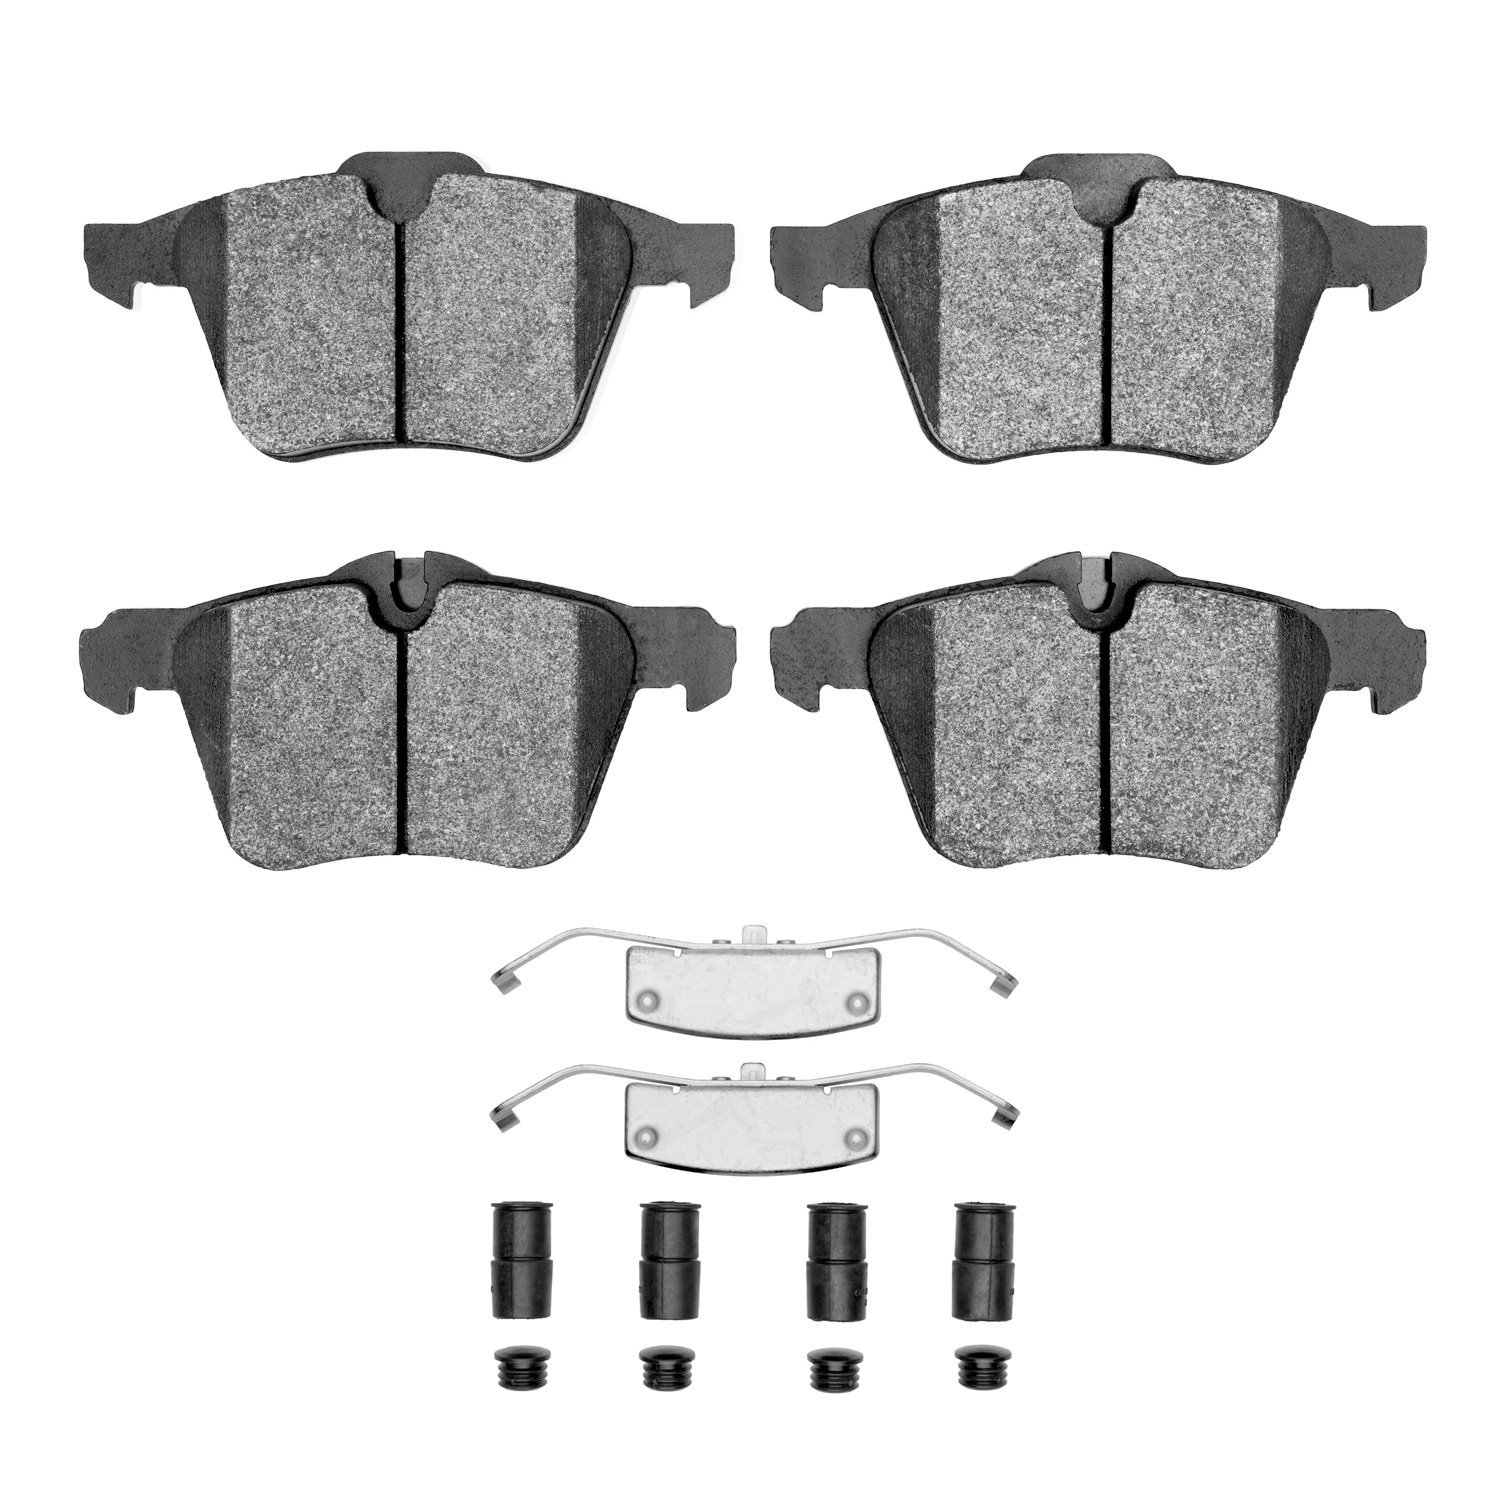 Ceramic Brake Pads & Hardware Kit, 2007-2018 Fits Multiple Makes/Models, Position: Front